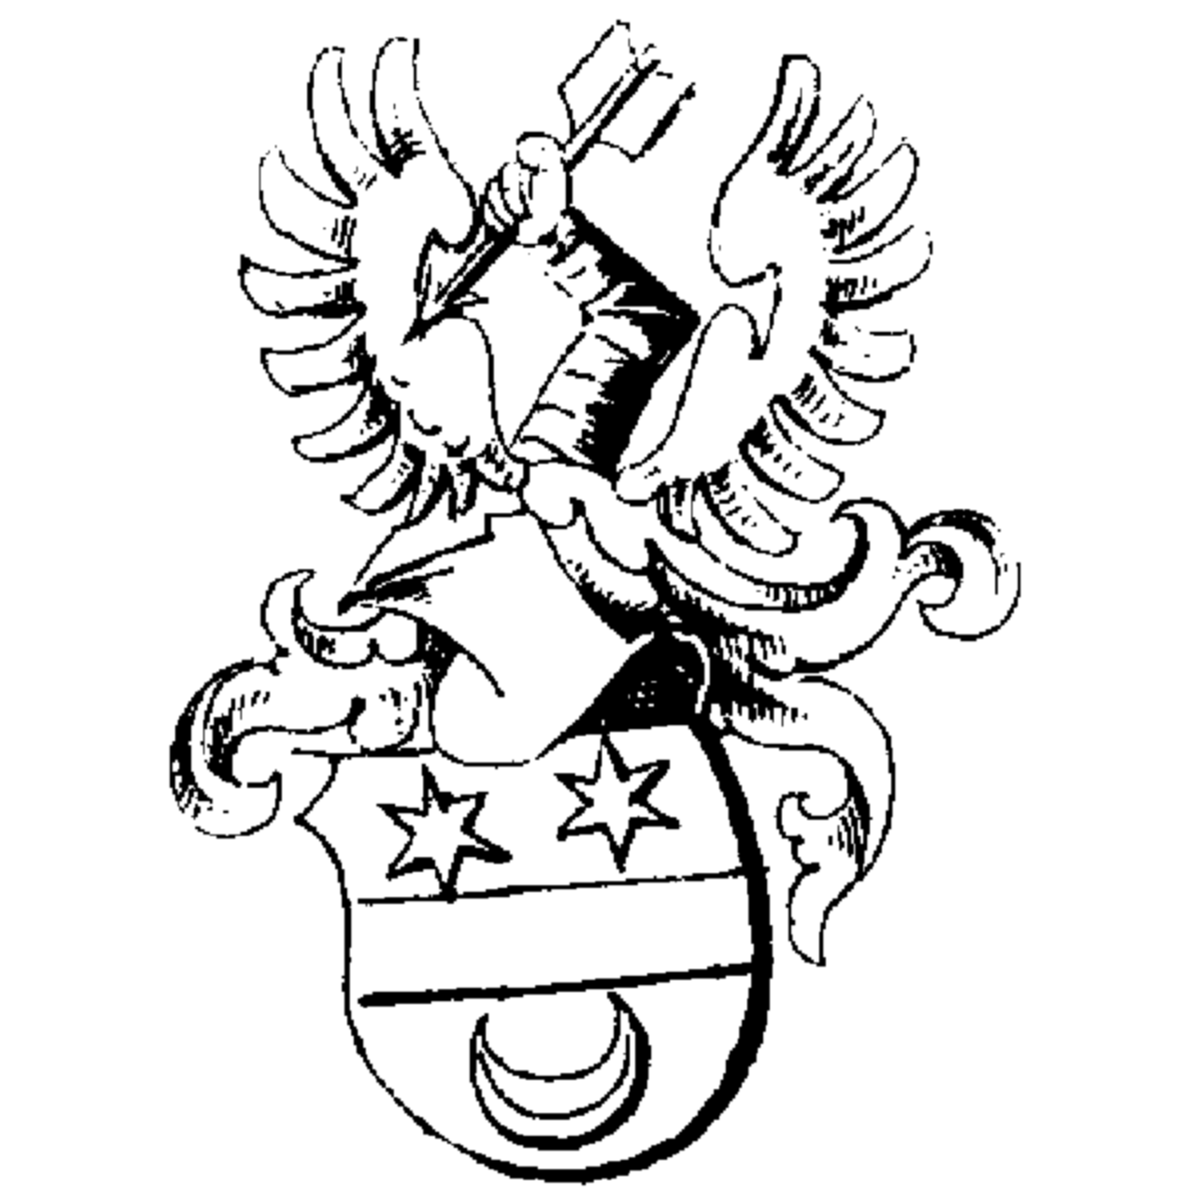 Wappen der Familie Nimbsch